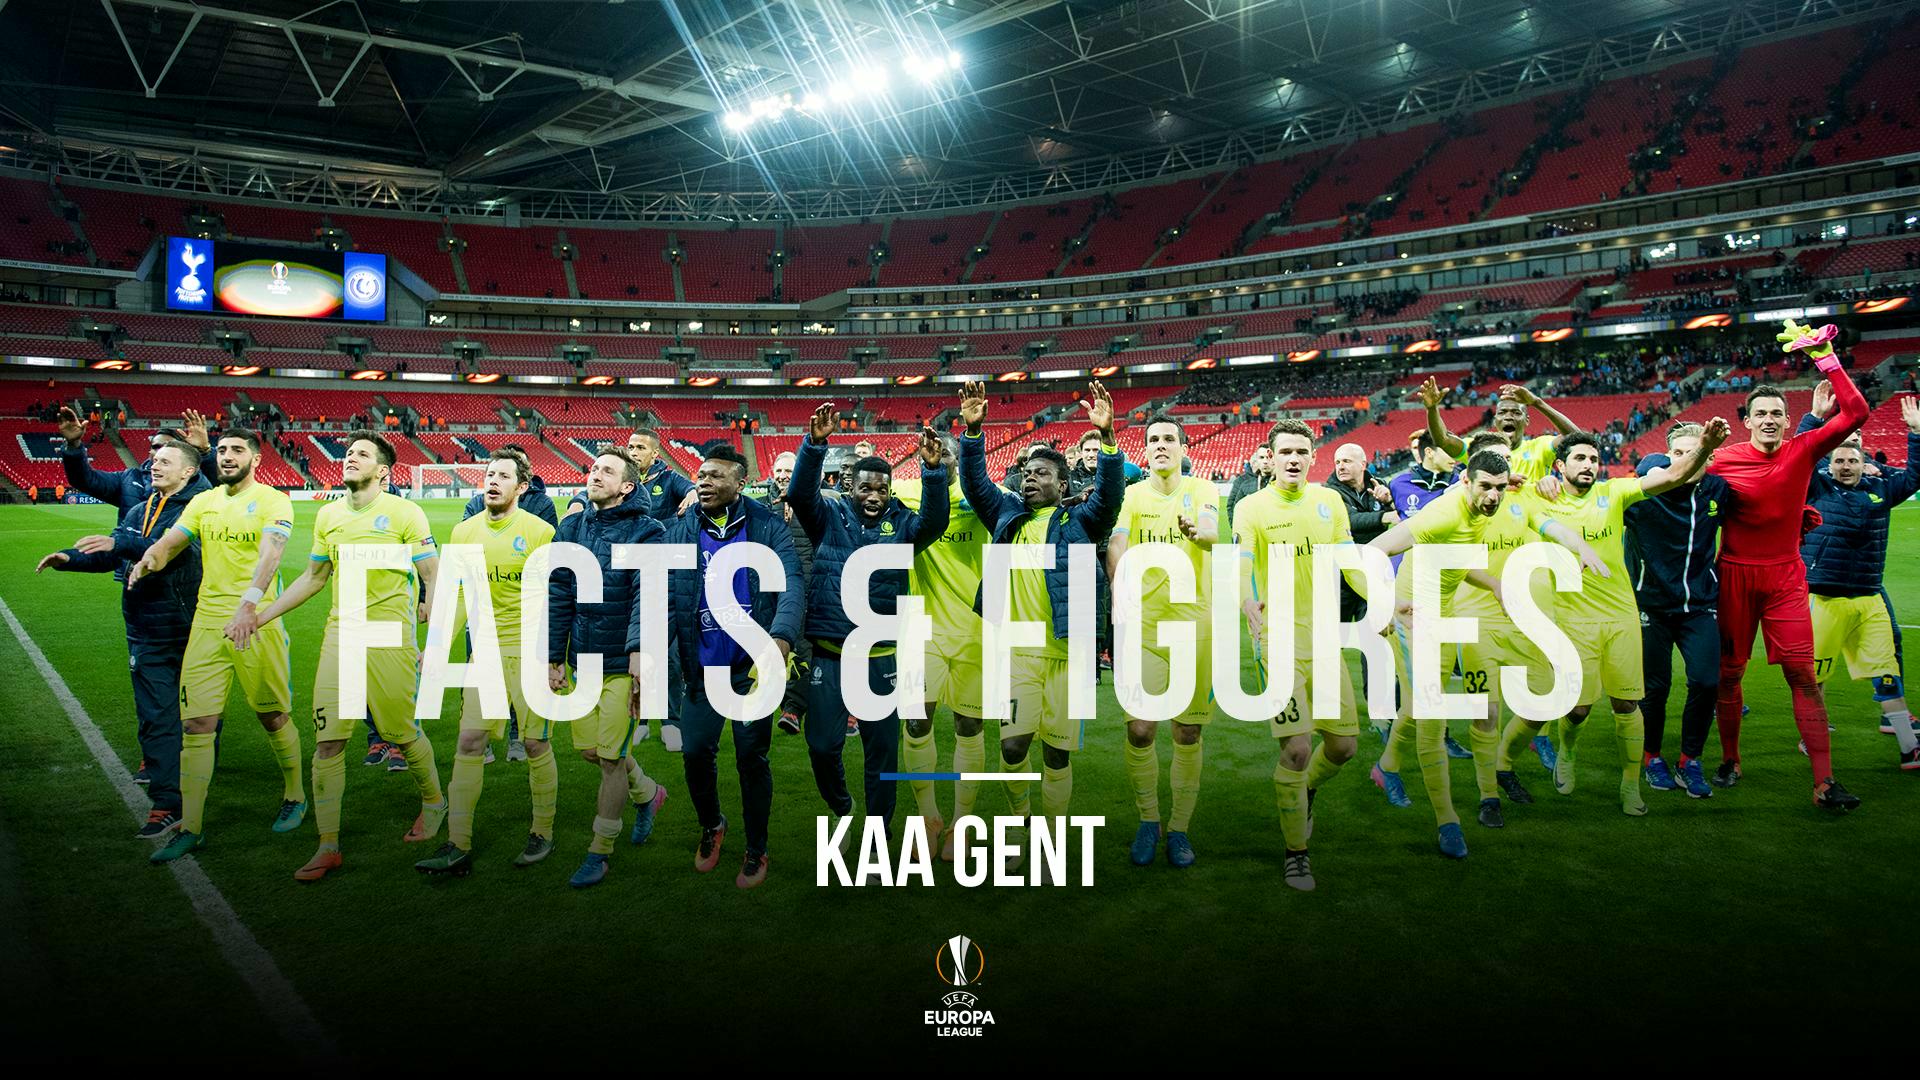 KAA Gent - KRC Genk: Facts and Figures (deel 1)